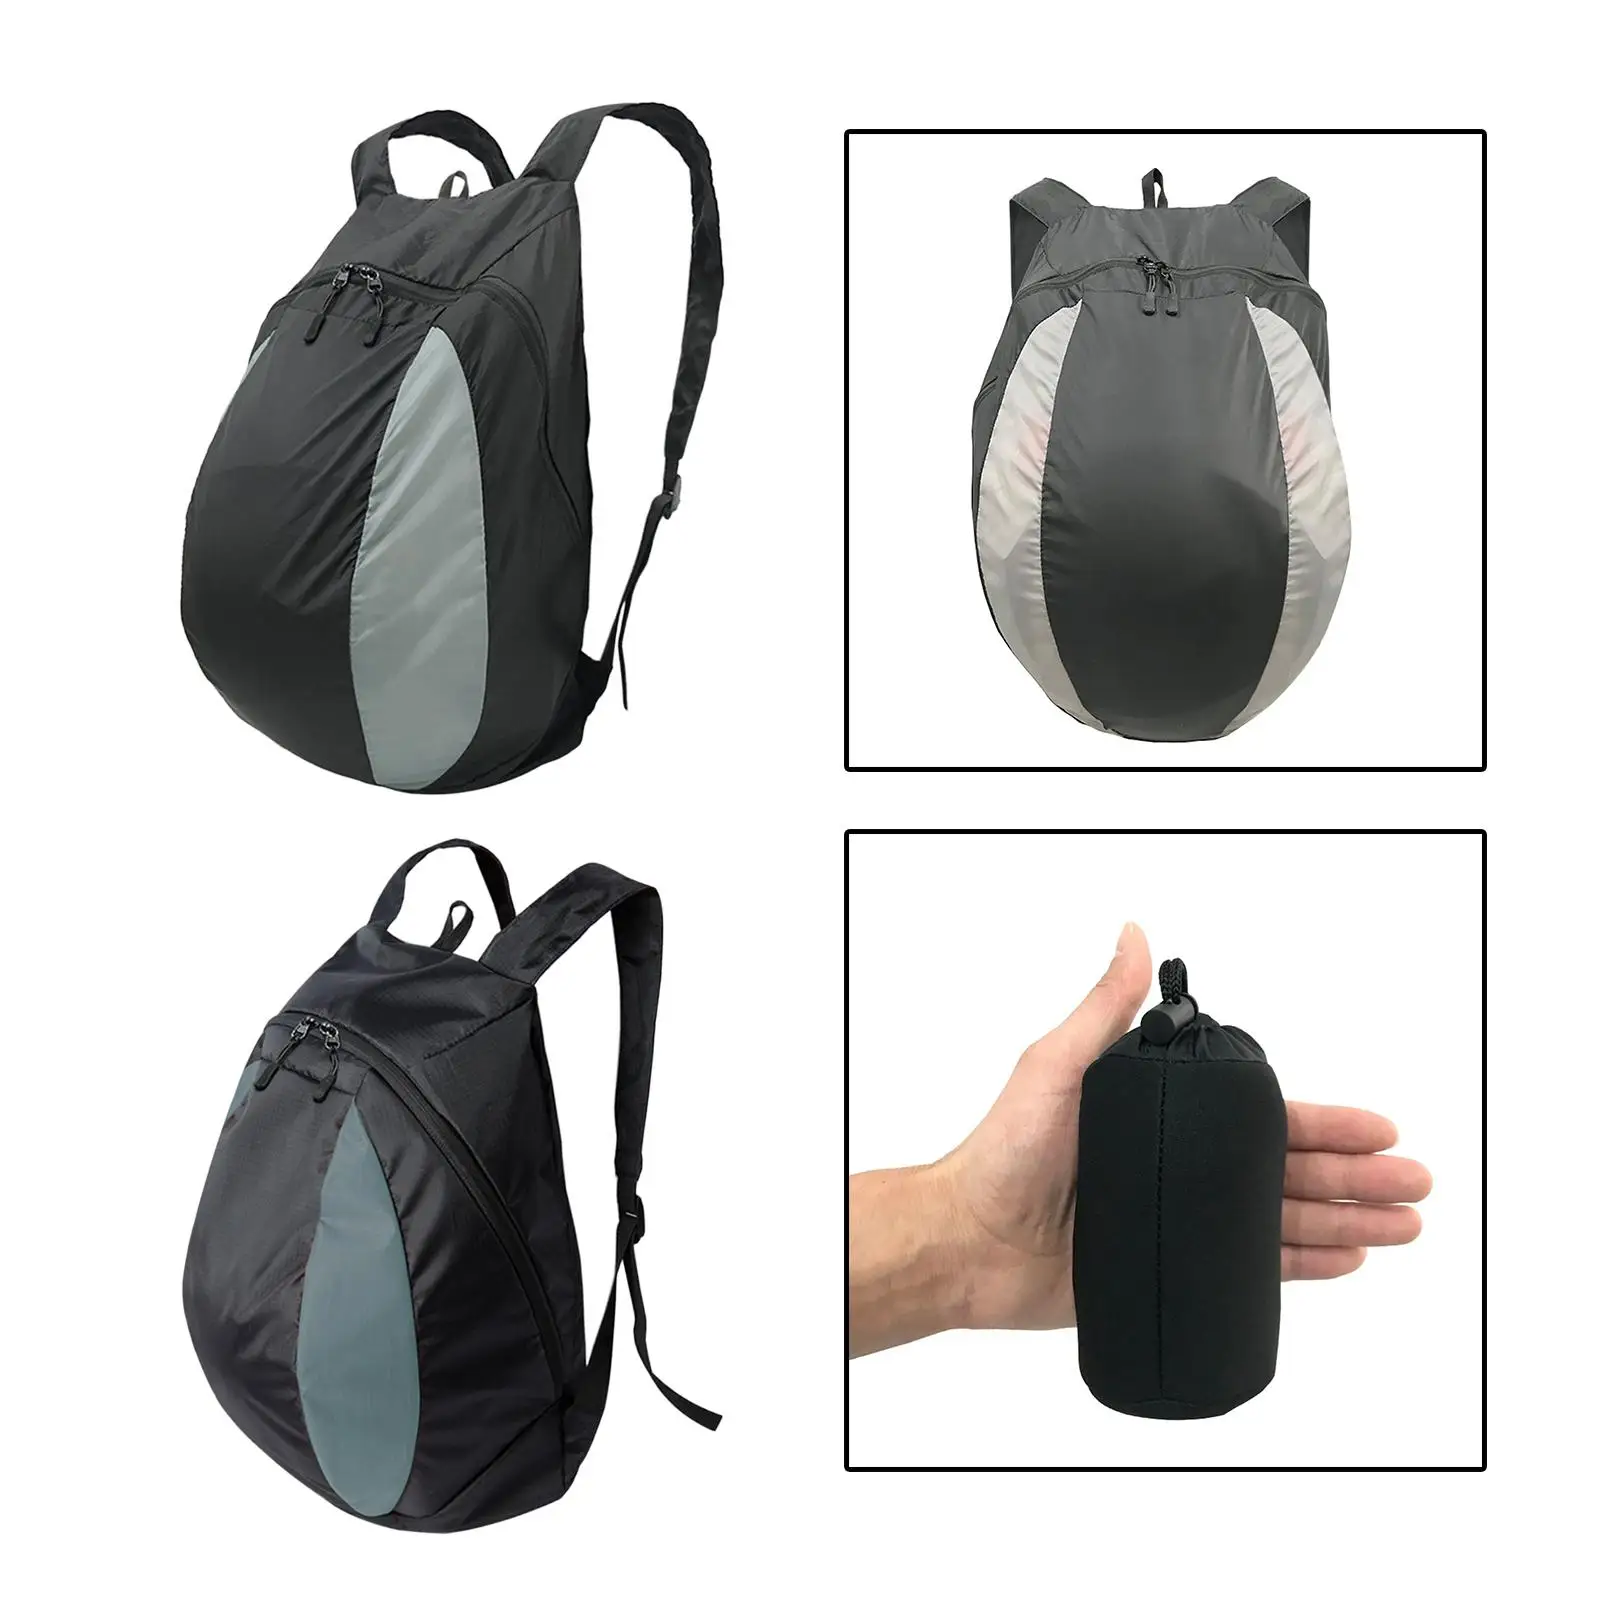 Basketball Shoulder Bag Folding Wear Resistant Sports Backpack Soccer Storage Bag Holder for Outdoor Activities Clothes